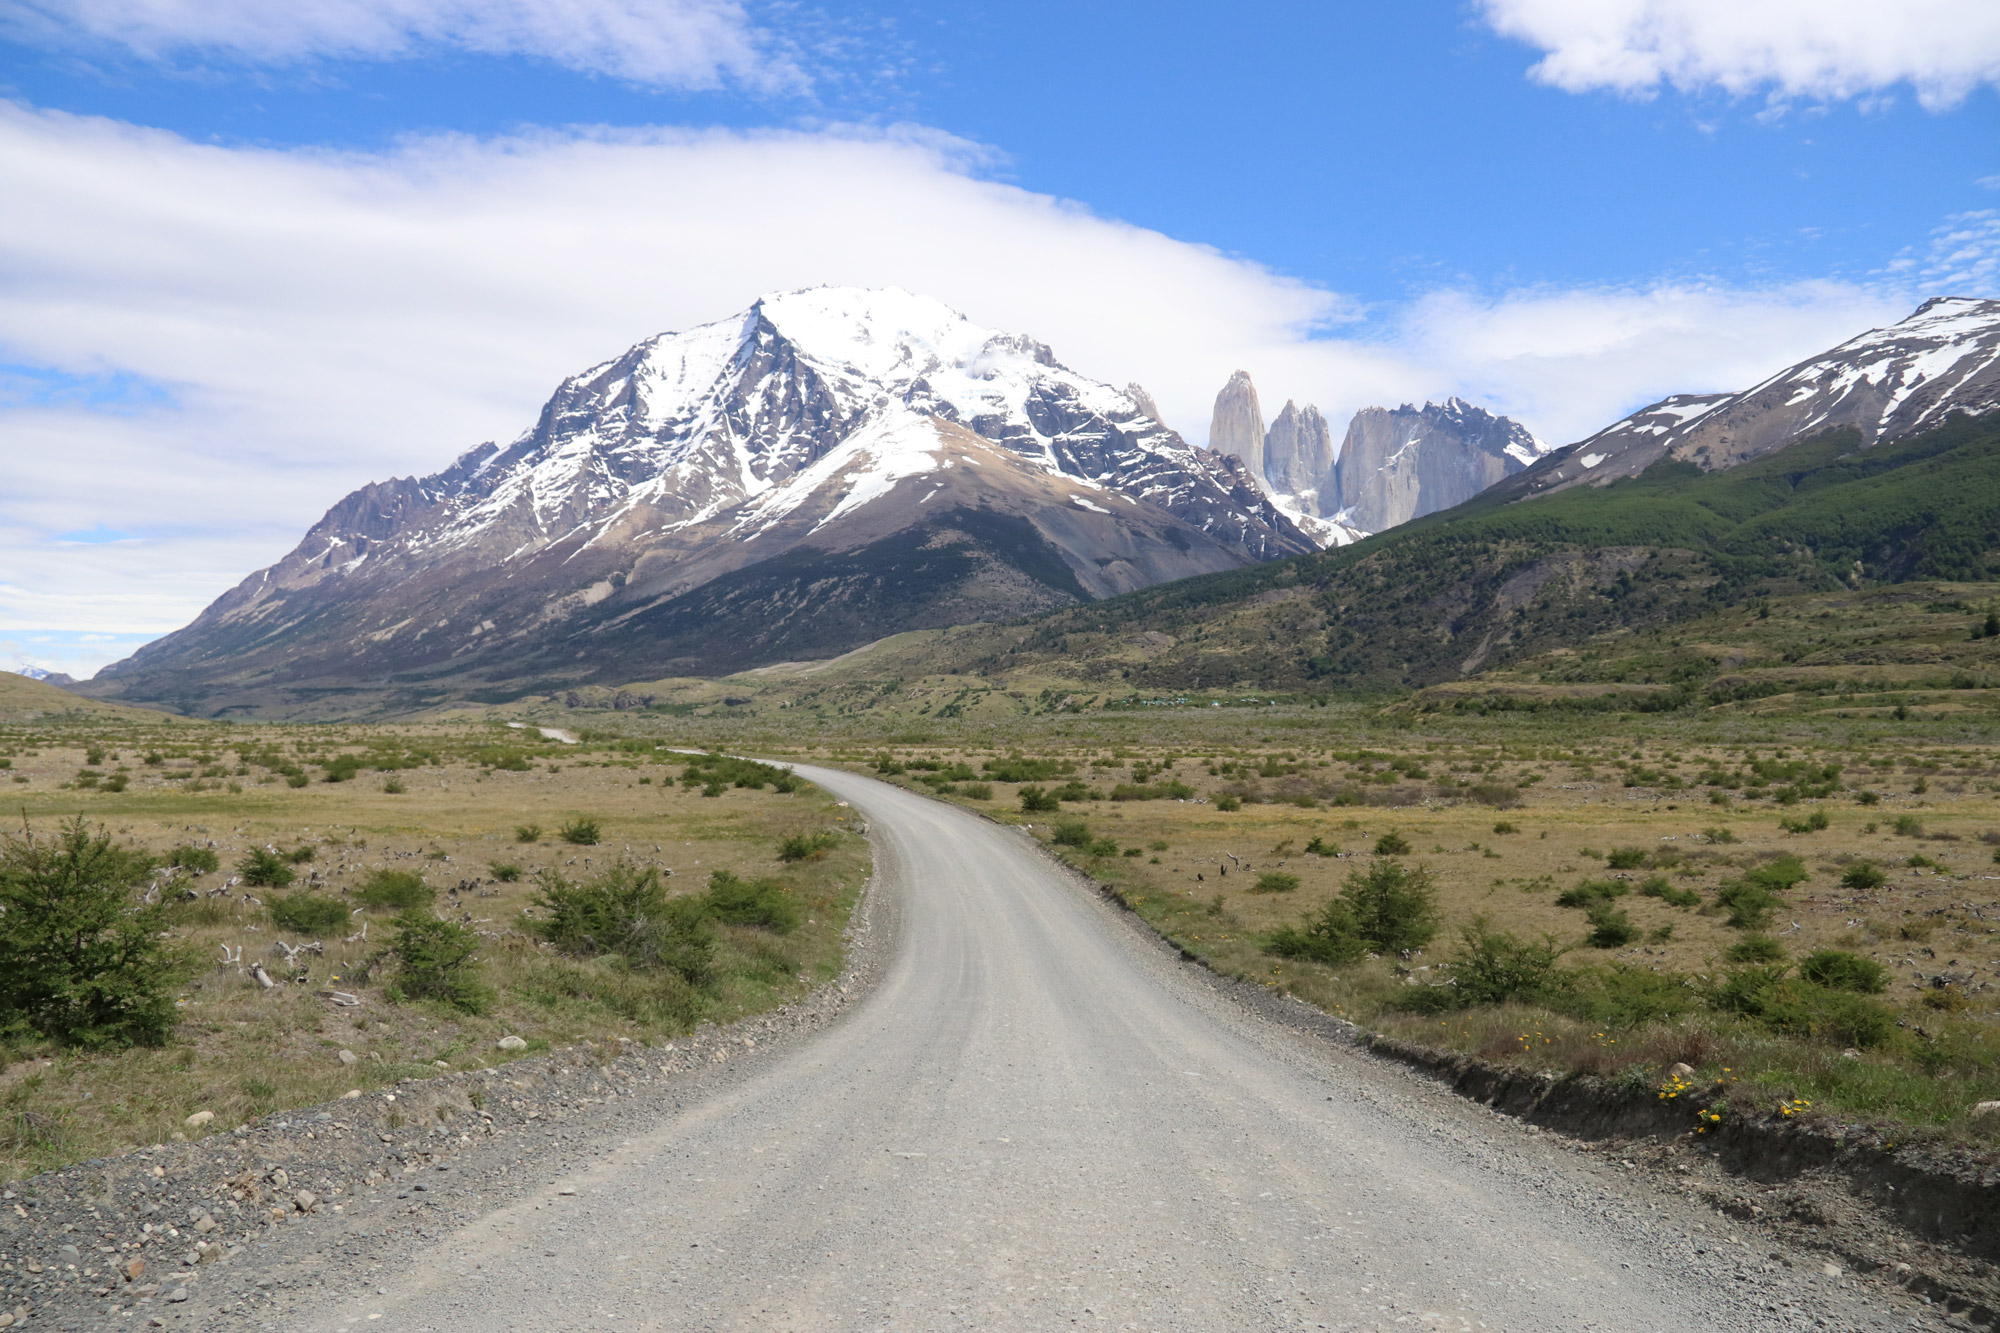 Patagonië - Torres del Paine